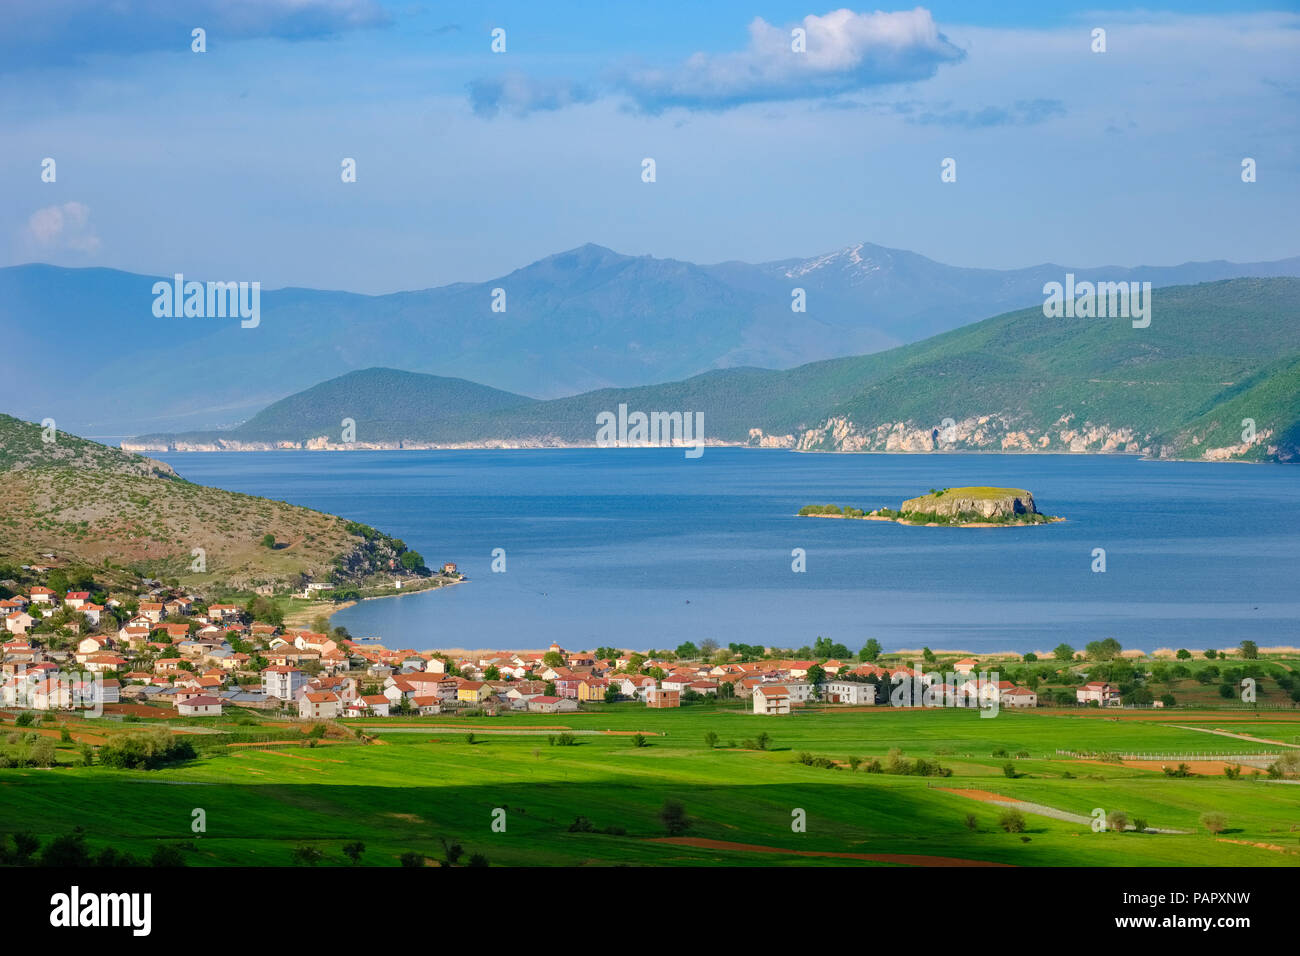 L'Albanie, le Parc National de Prespa, le lac Prespa près de Korca, Village Liqenas et Maligrad Island, la Grèce et la Macédoine à l'arrière-plan Banque D'Images